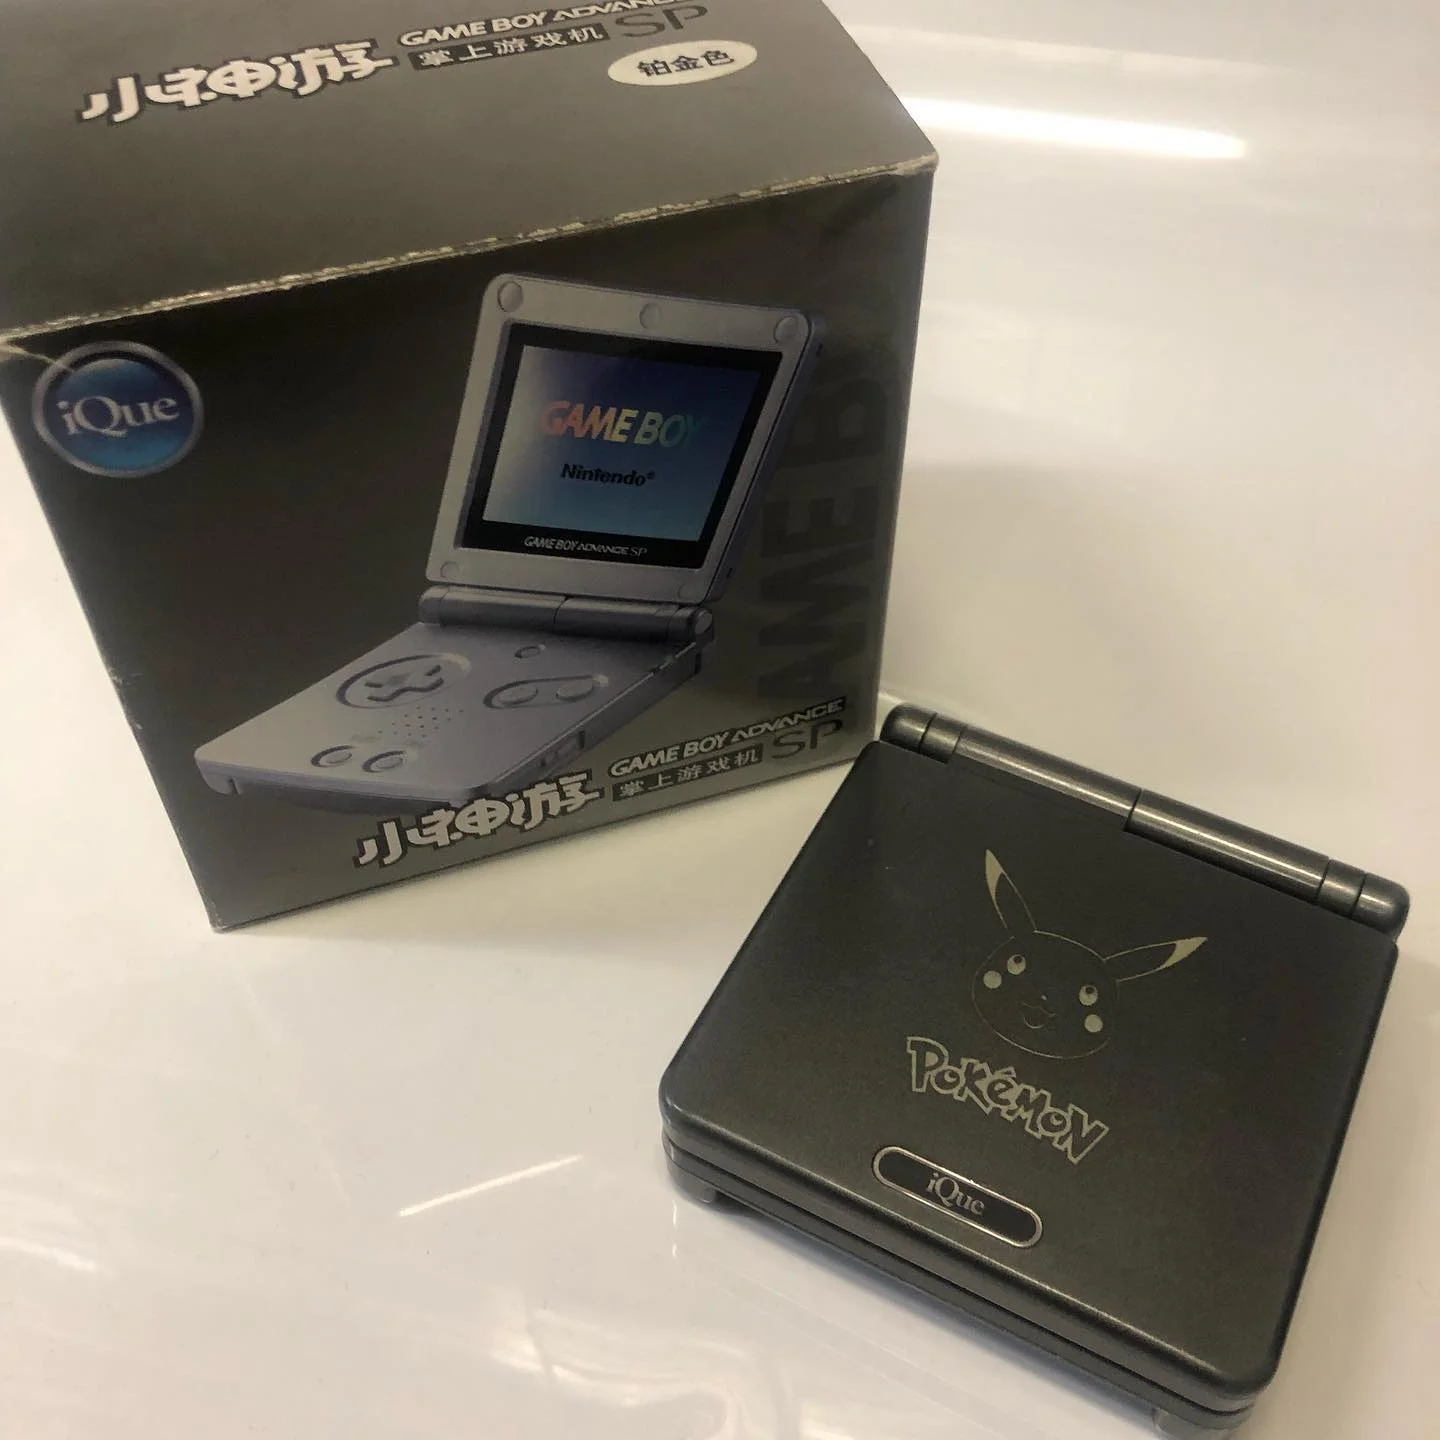  iQue Game Boy Advance SP Pikachu Black Console